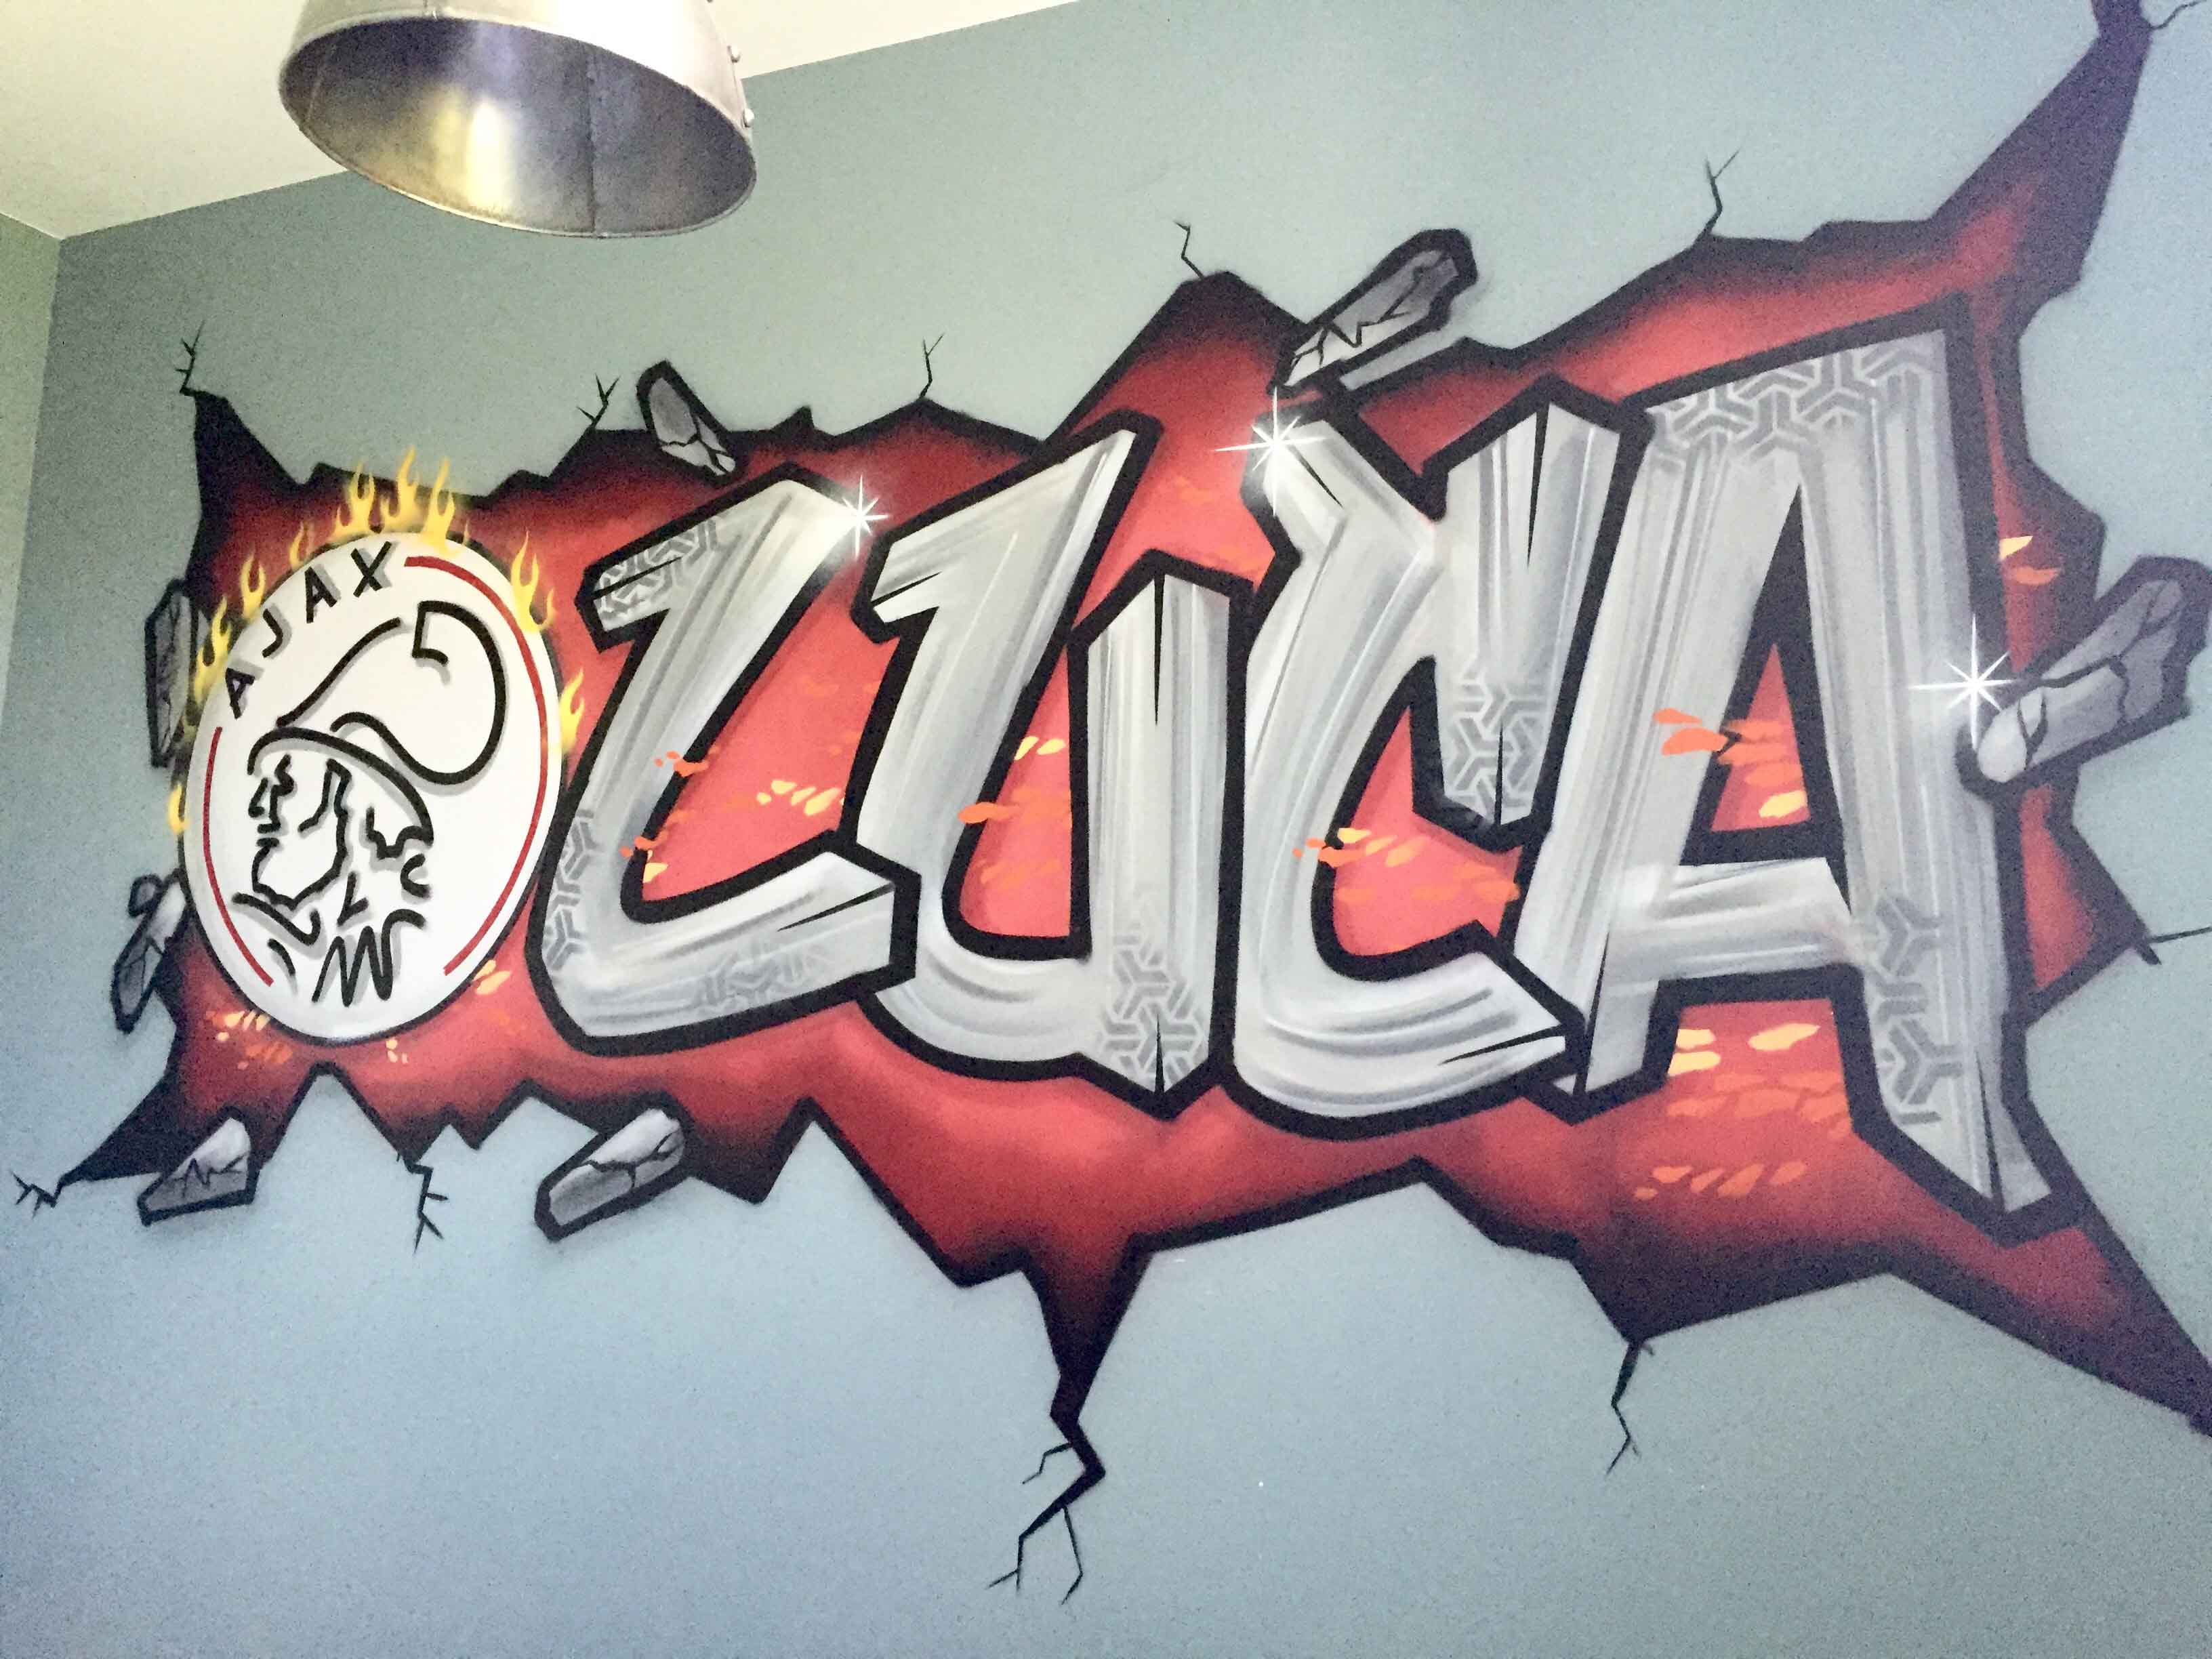 Doordeweekse dagen tekort inrichting Ajax graffiti - Kinderkamer GraffitiKinderkamer Graffiti